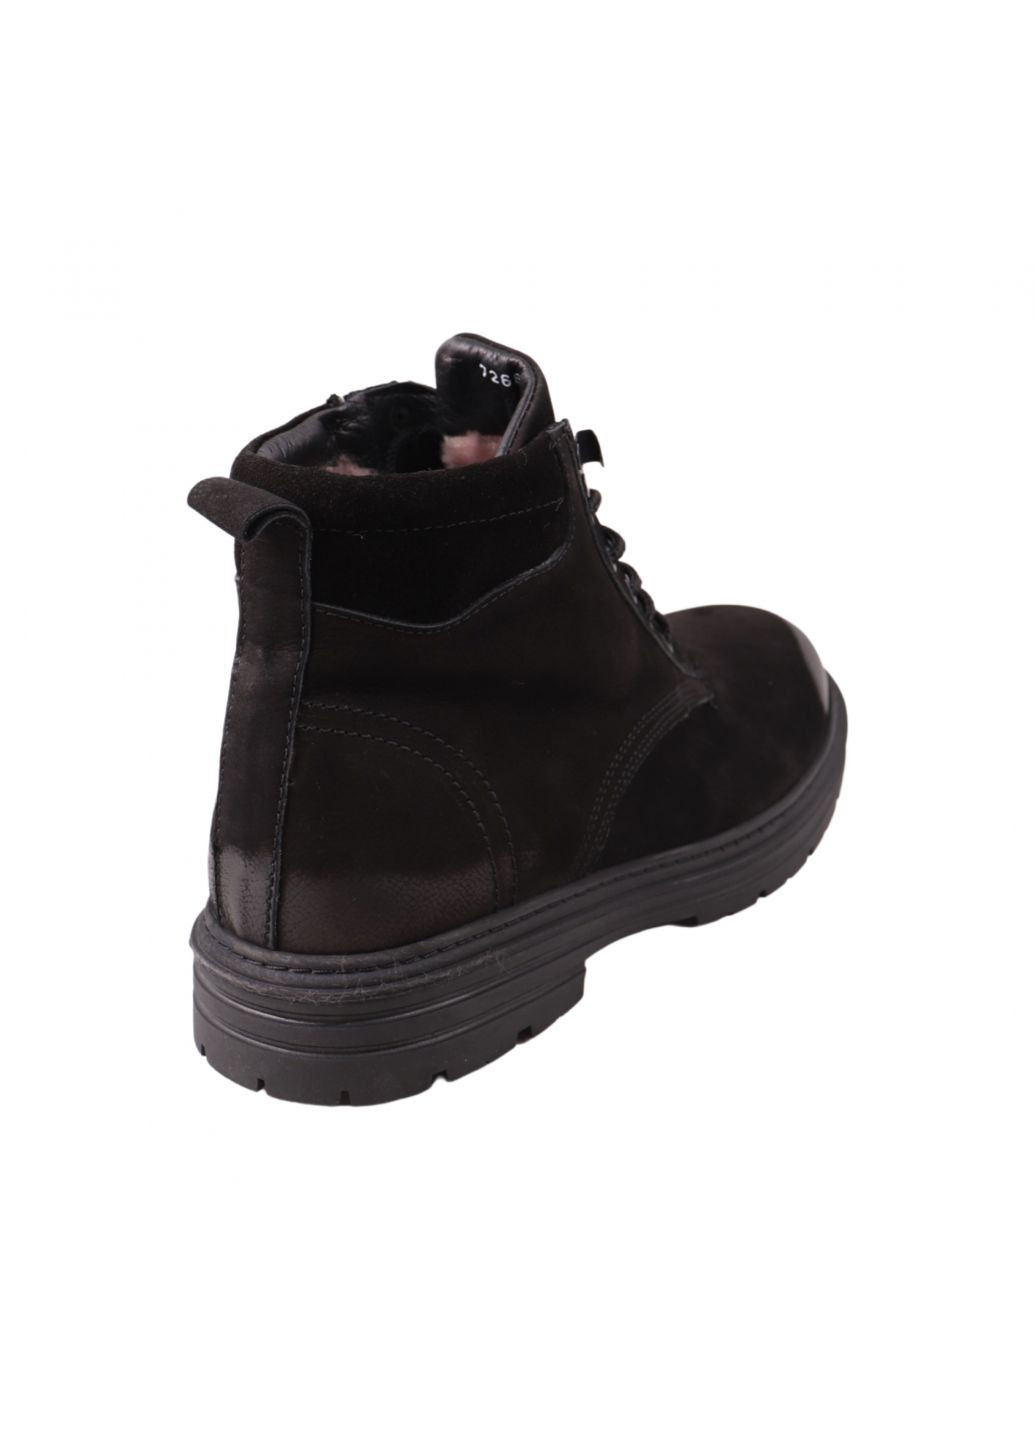 Черные ботинки мужские черные натуральный нубук Ridge